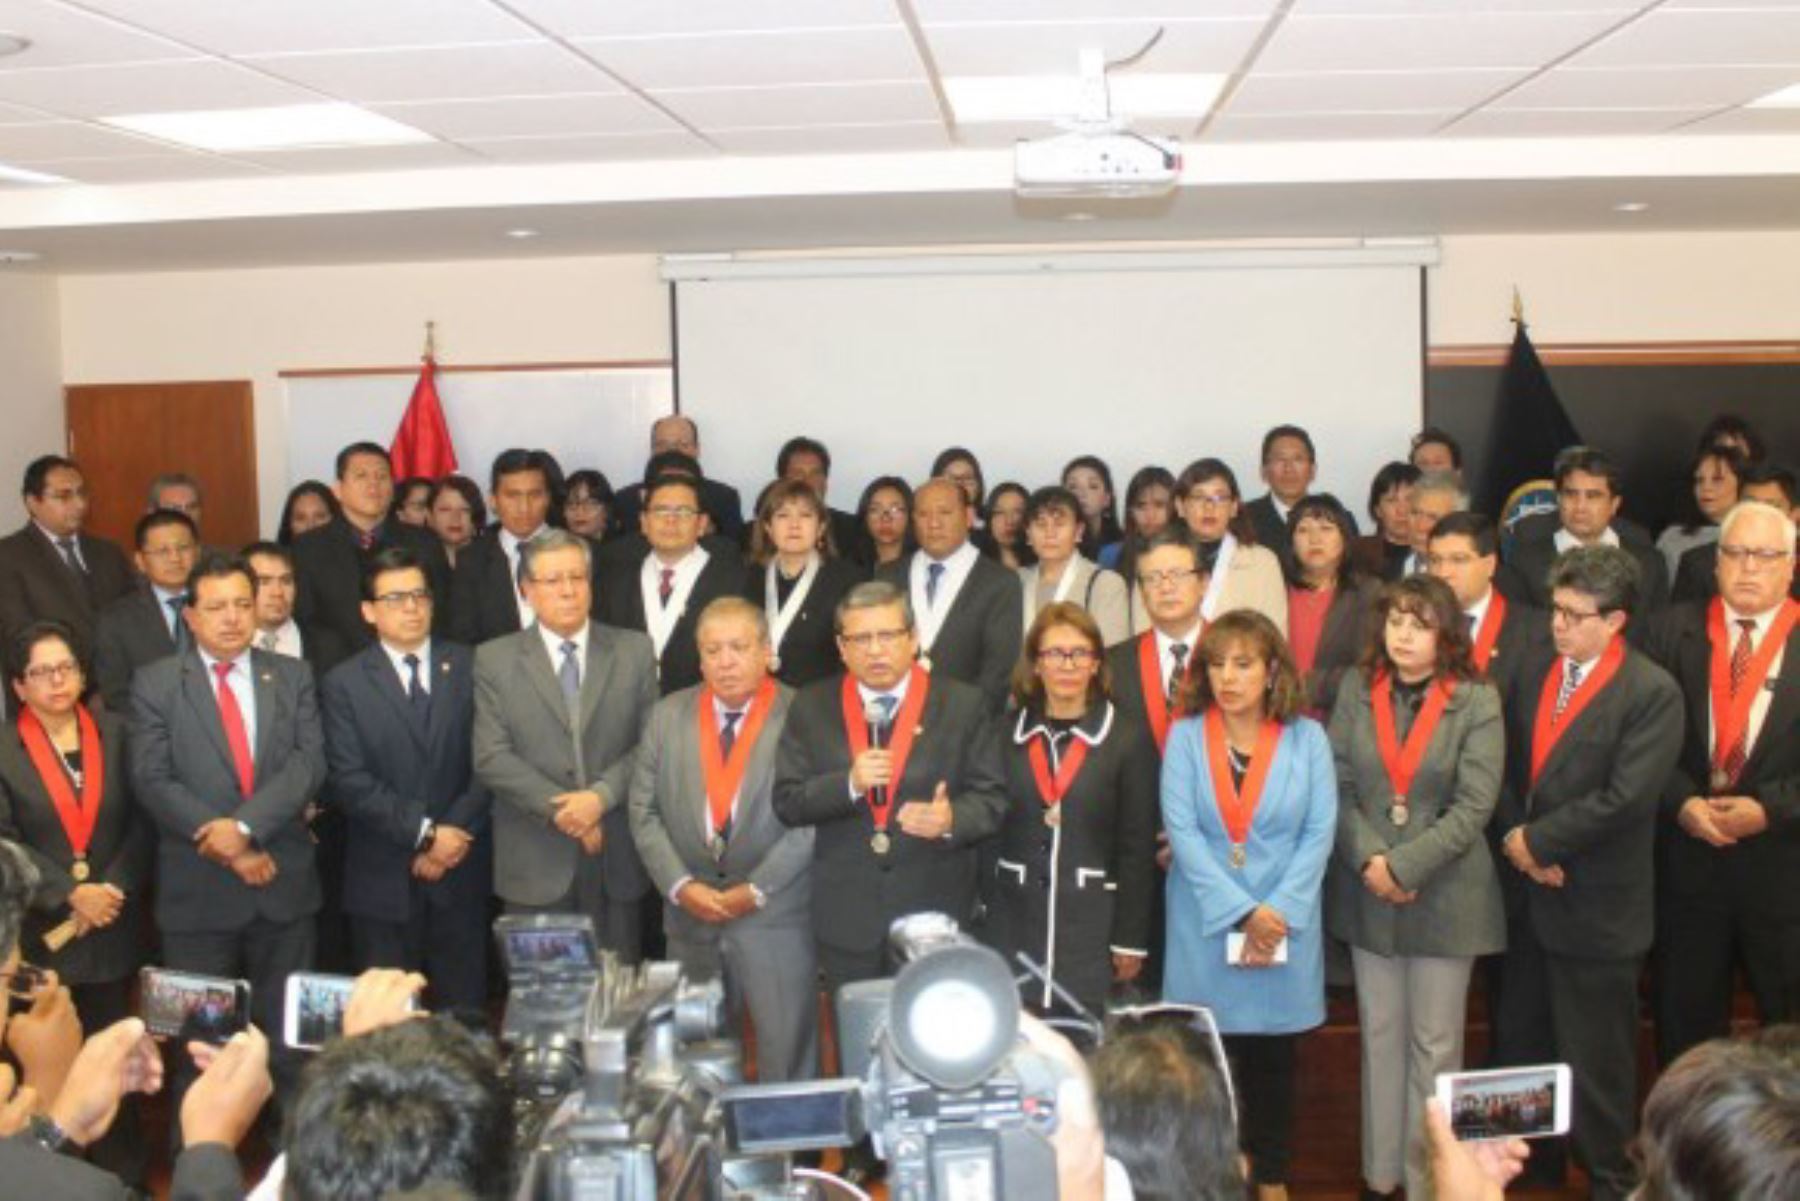 Magistrados de la Corte Superior de Arequipa apoyan la reforma del Poder Judicial. Foto: elbuho.pe